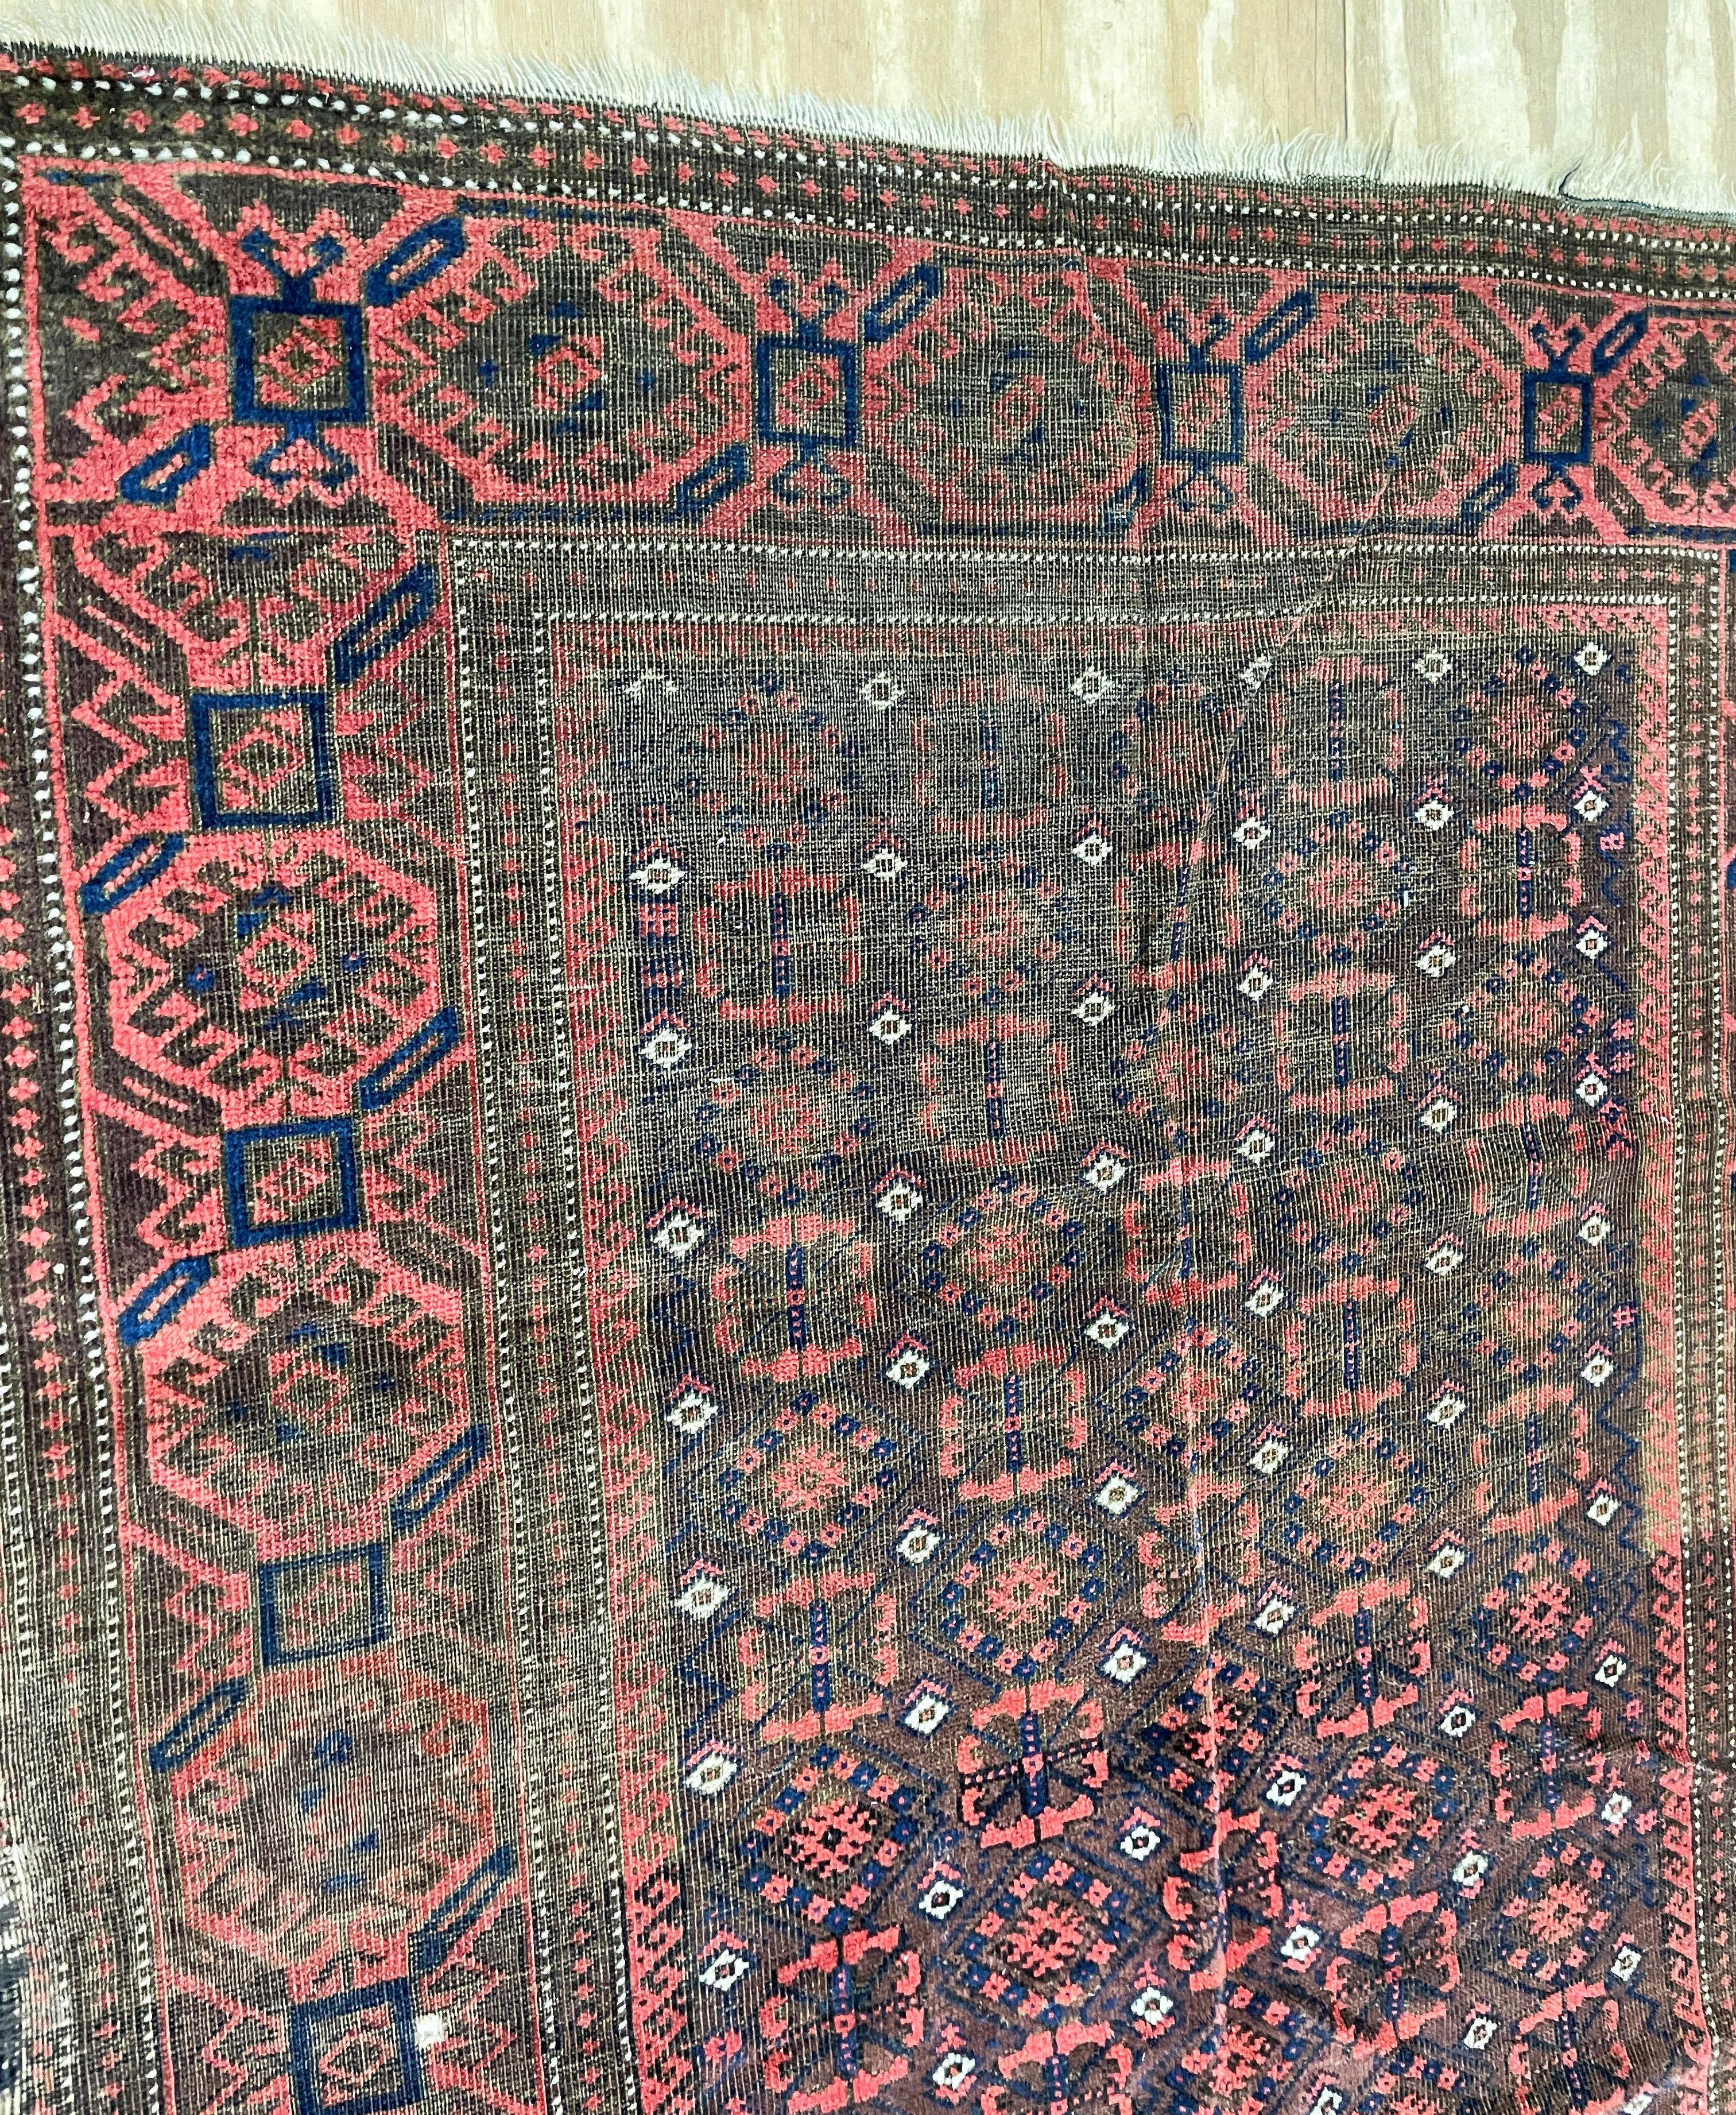 
Erleben Sie die zeitlose Eleganz eines Belouch Turkoman Teppichs

Treten Sie ein in eine Welt der Handwerkskunst und Tradition mit einem bemerkenswerten antiken Belouch Turkoman Teppich mit den Maßen 3'11